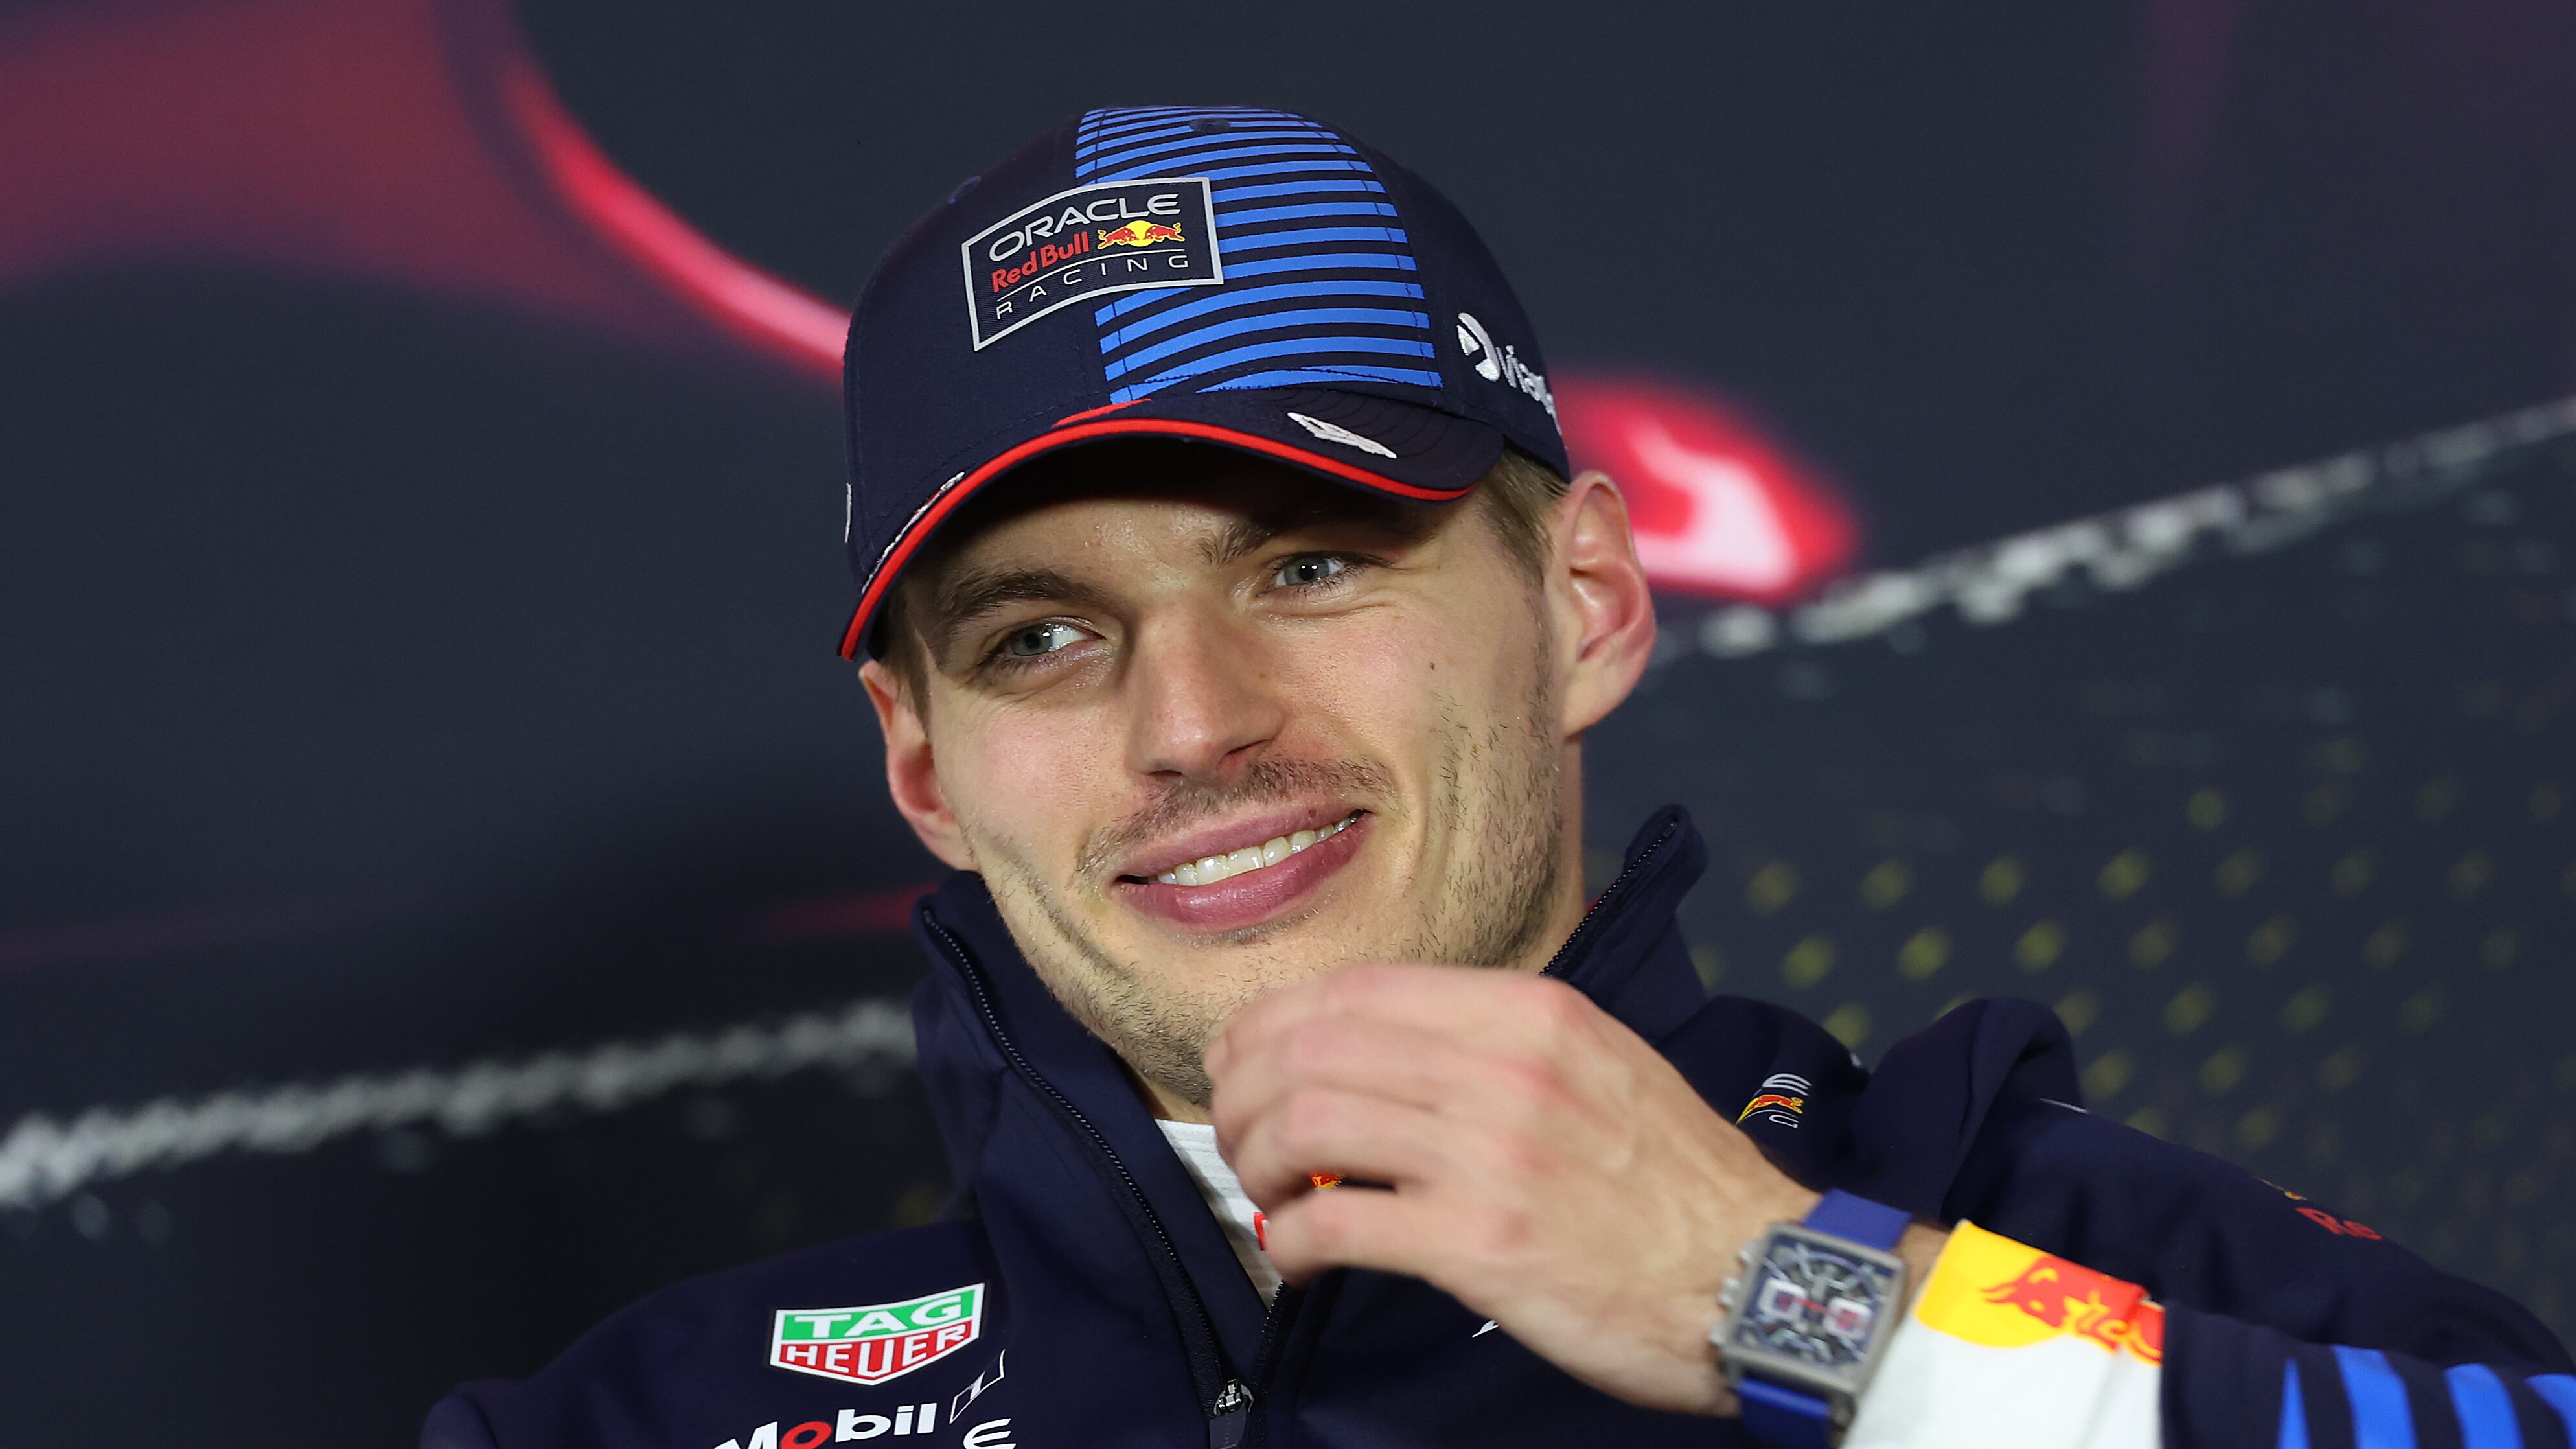 Reportes indican que Max Verstappen negociará con Mercedes después del GP de Miami.